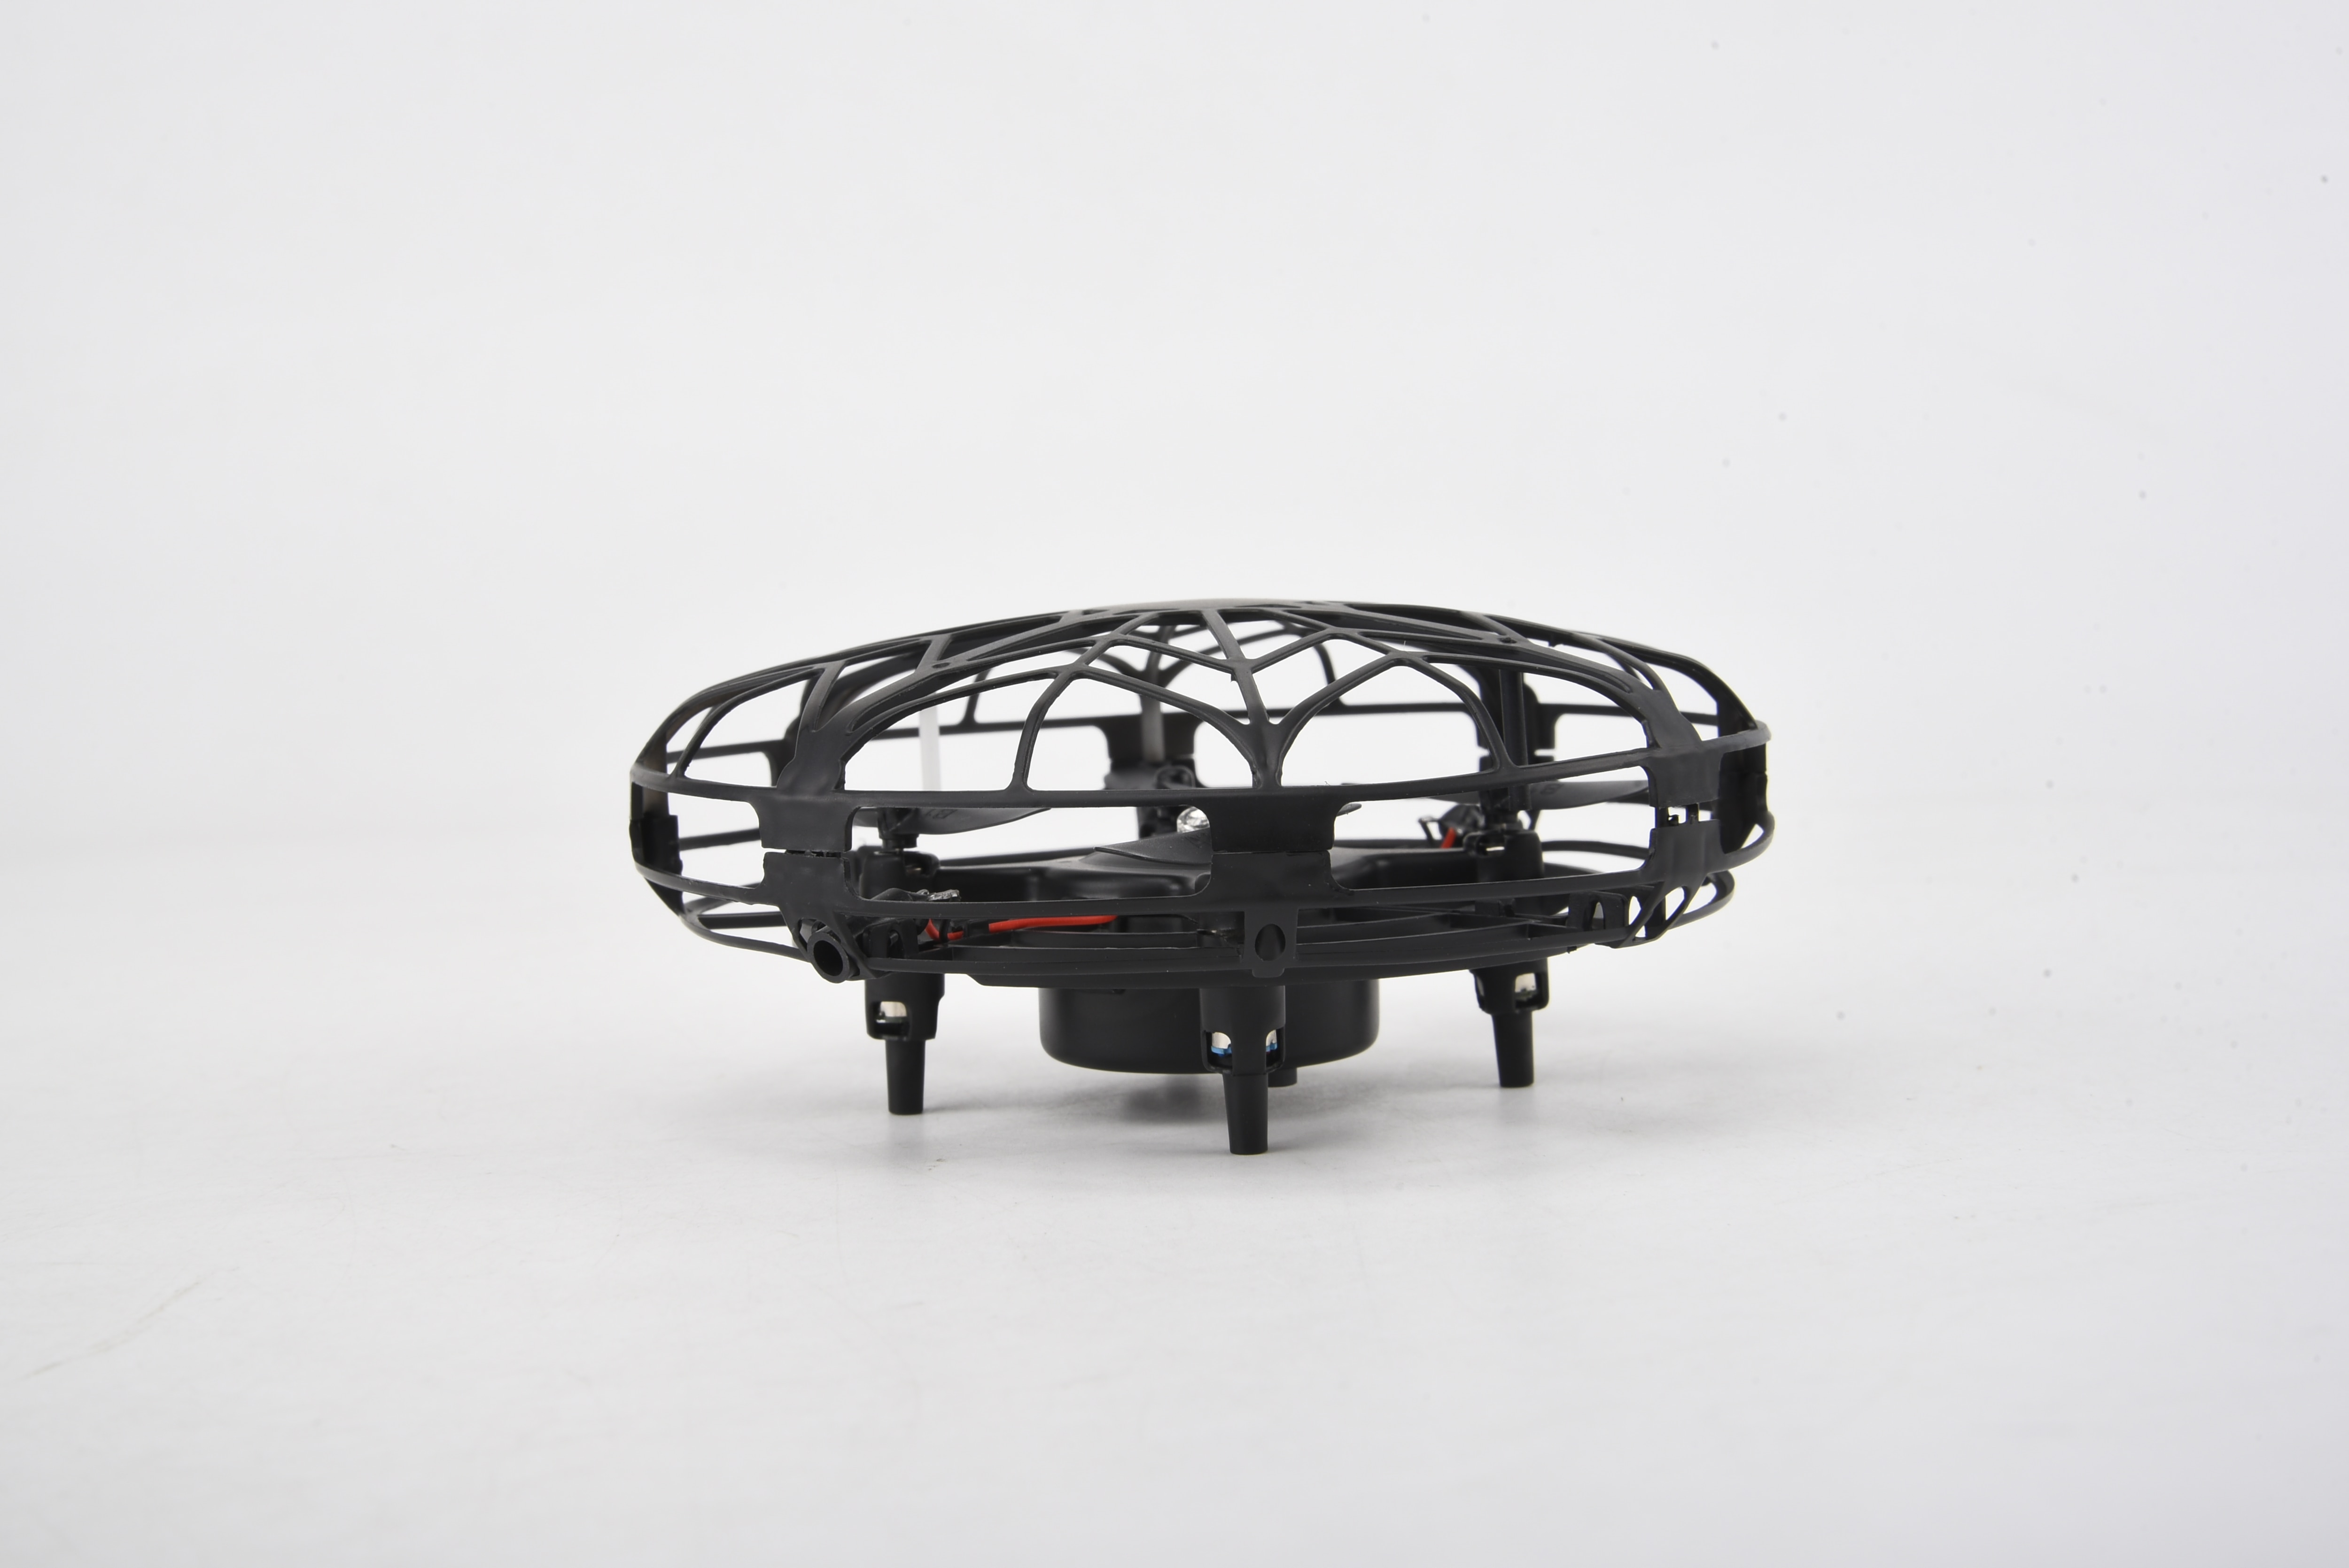 Smart Drone UFO Black